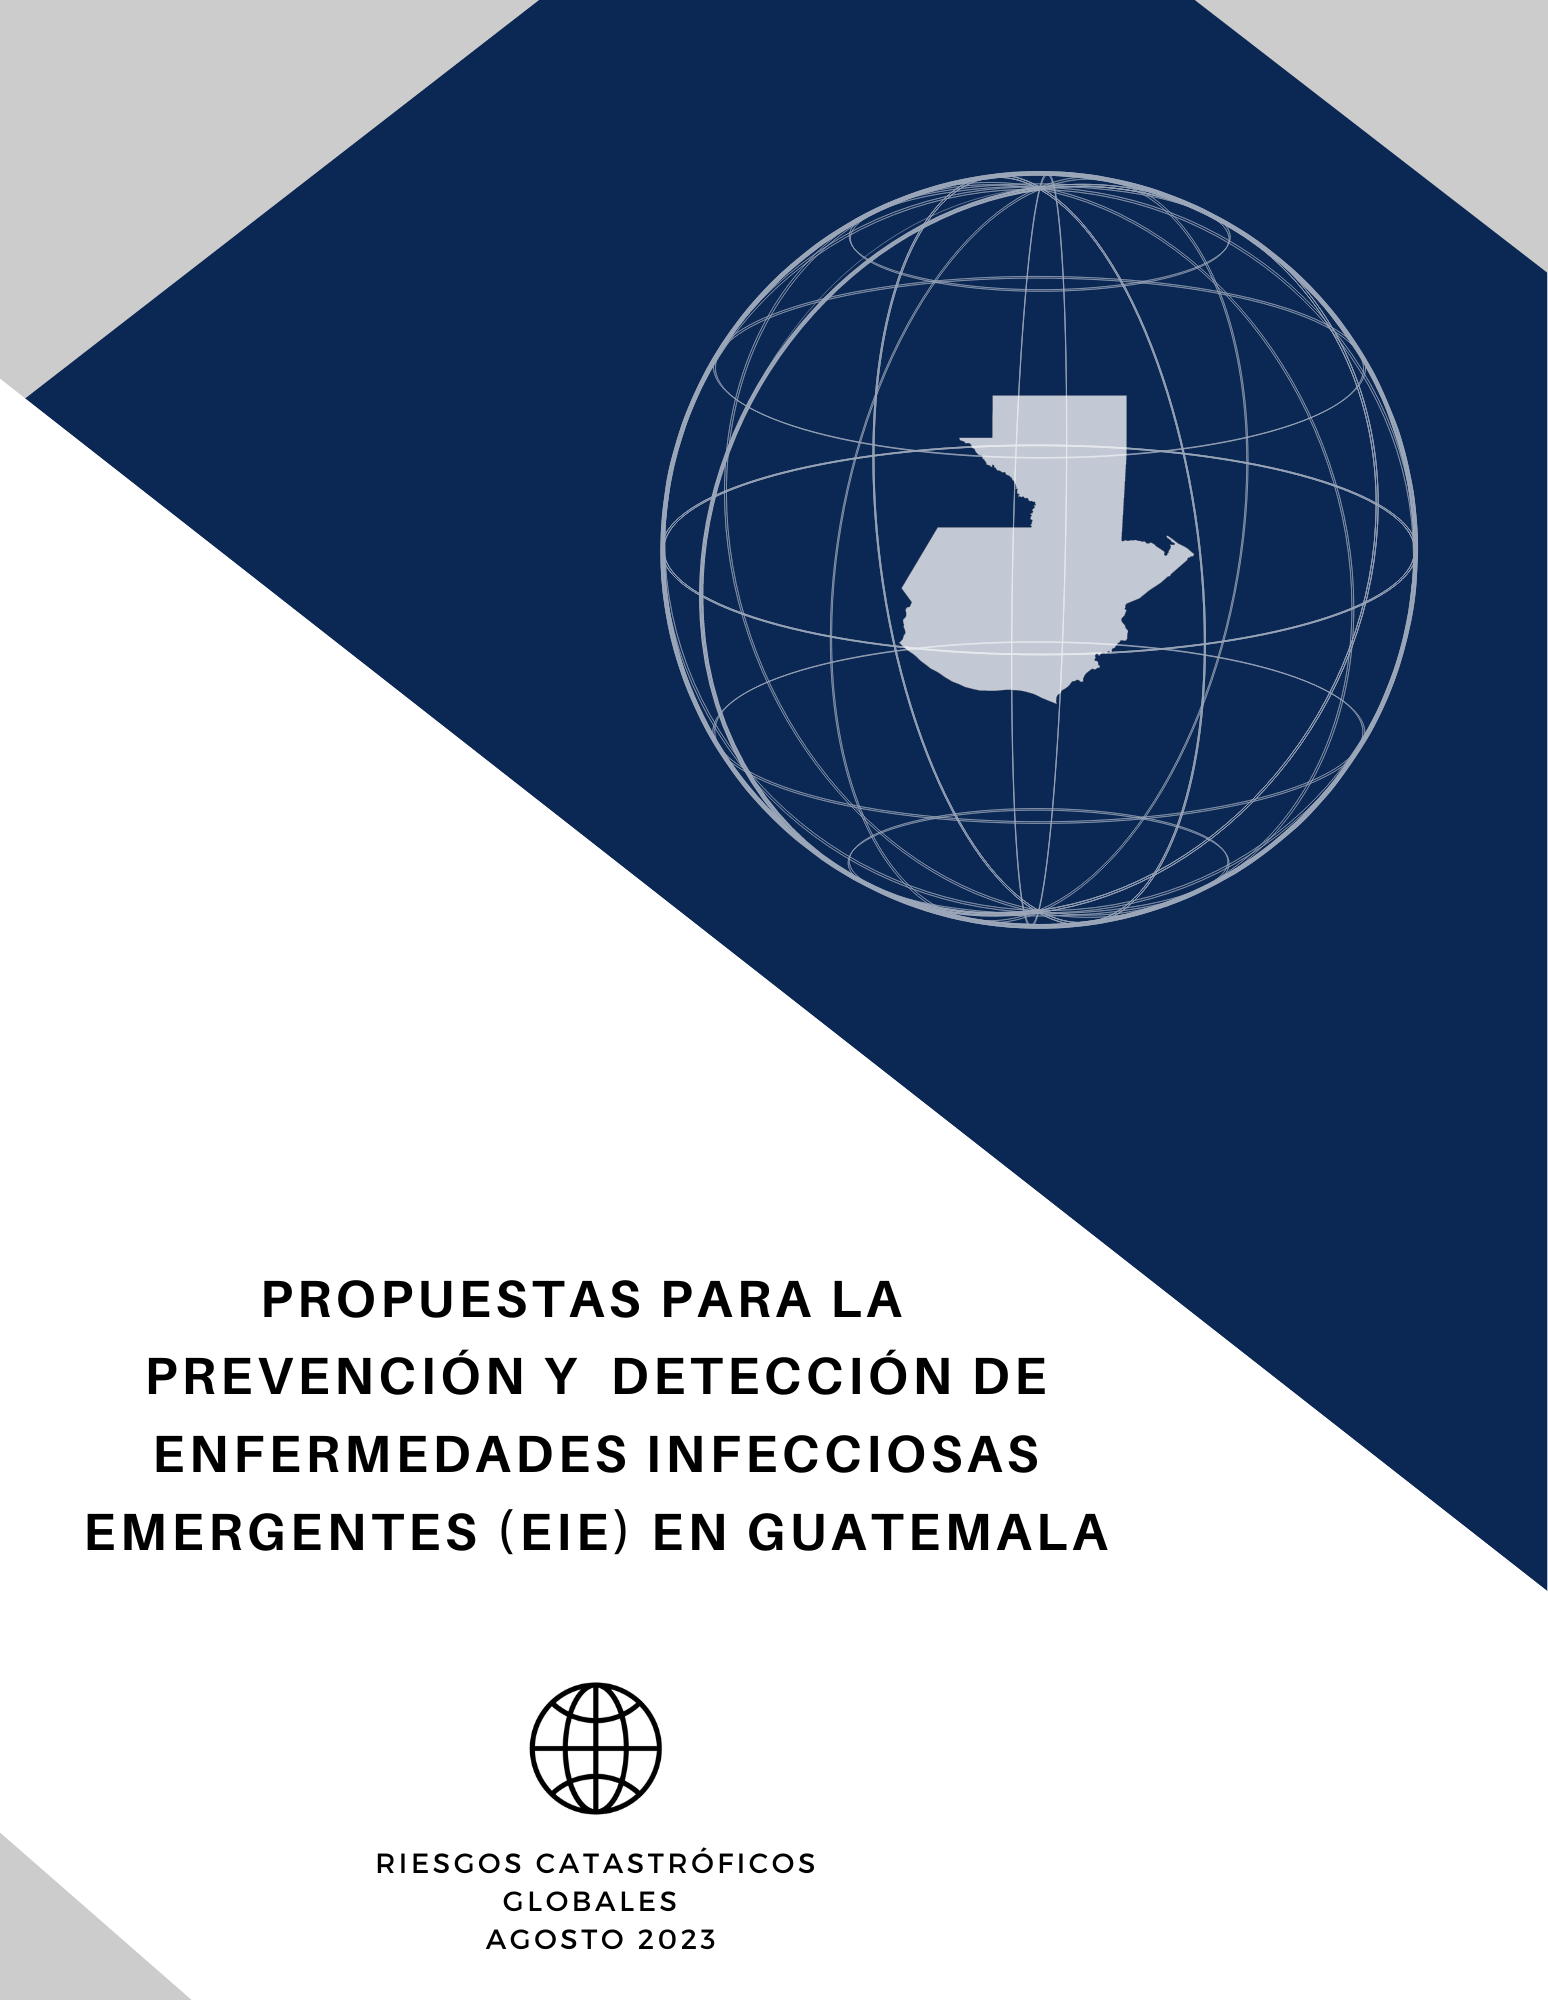 Propuestas para la prevención y detección de enfermedades infecciosas emergentes (EIE) en Guatemala.png